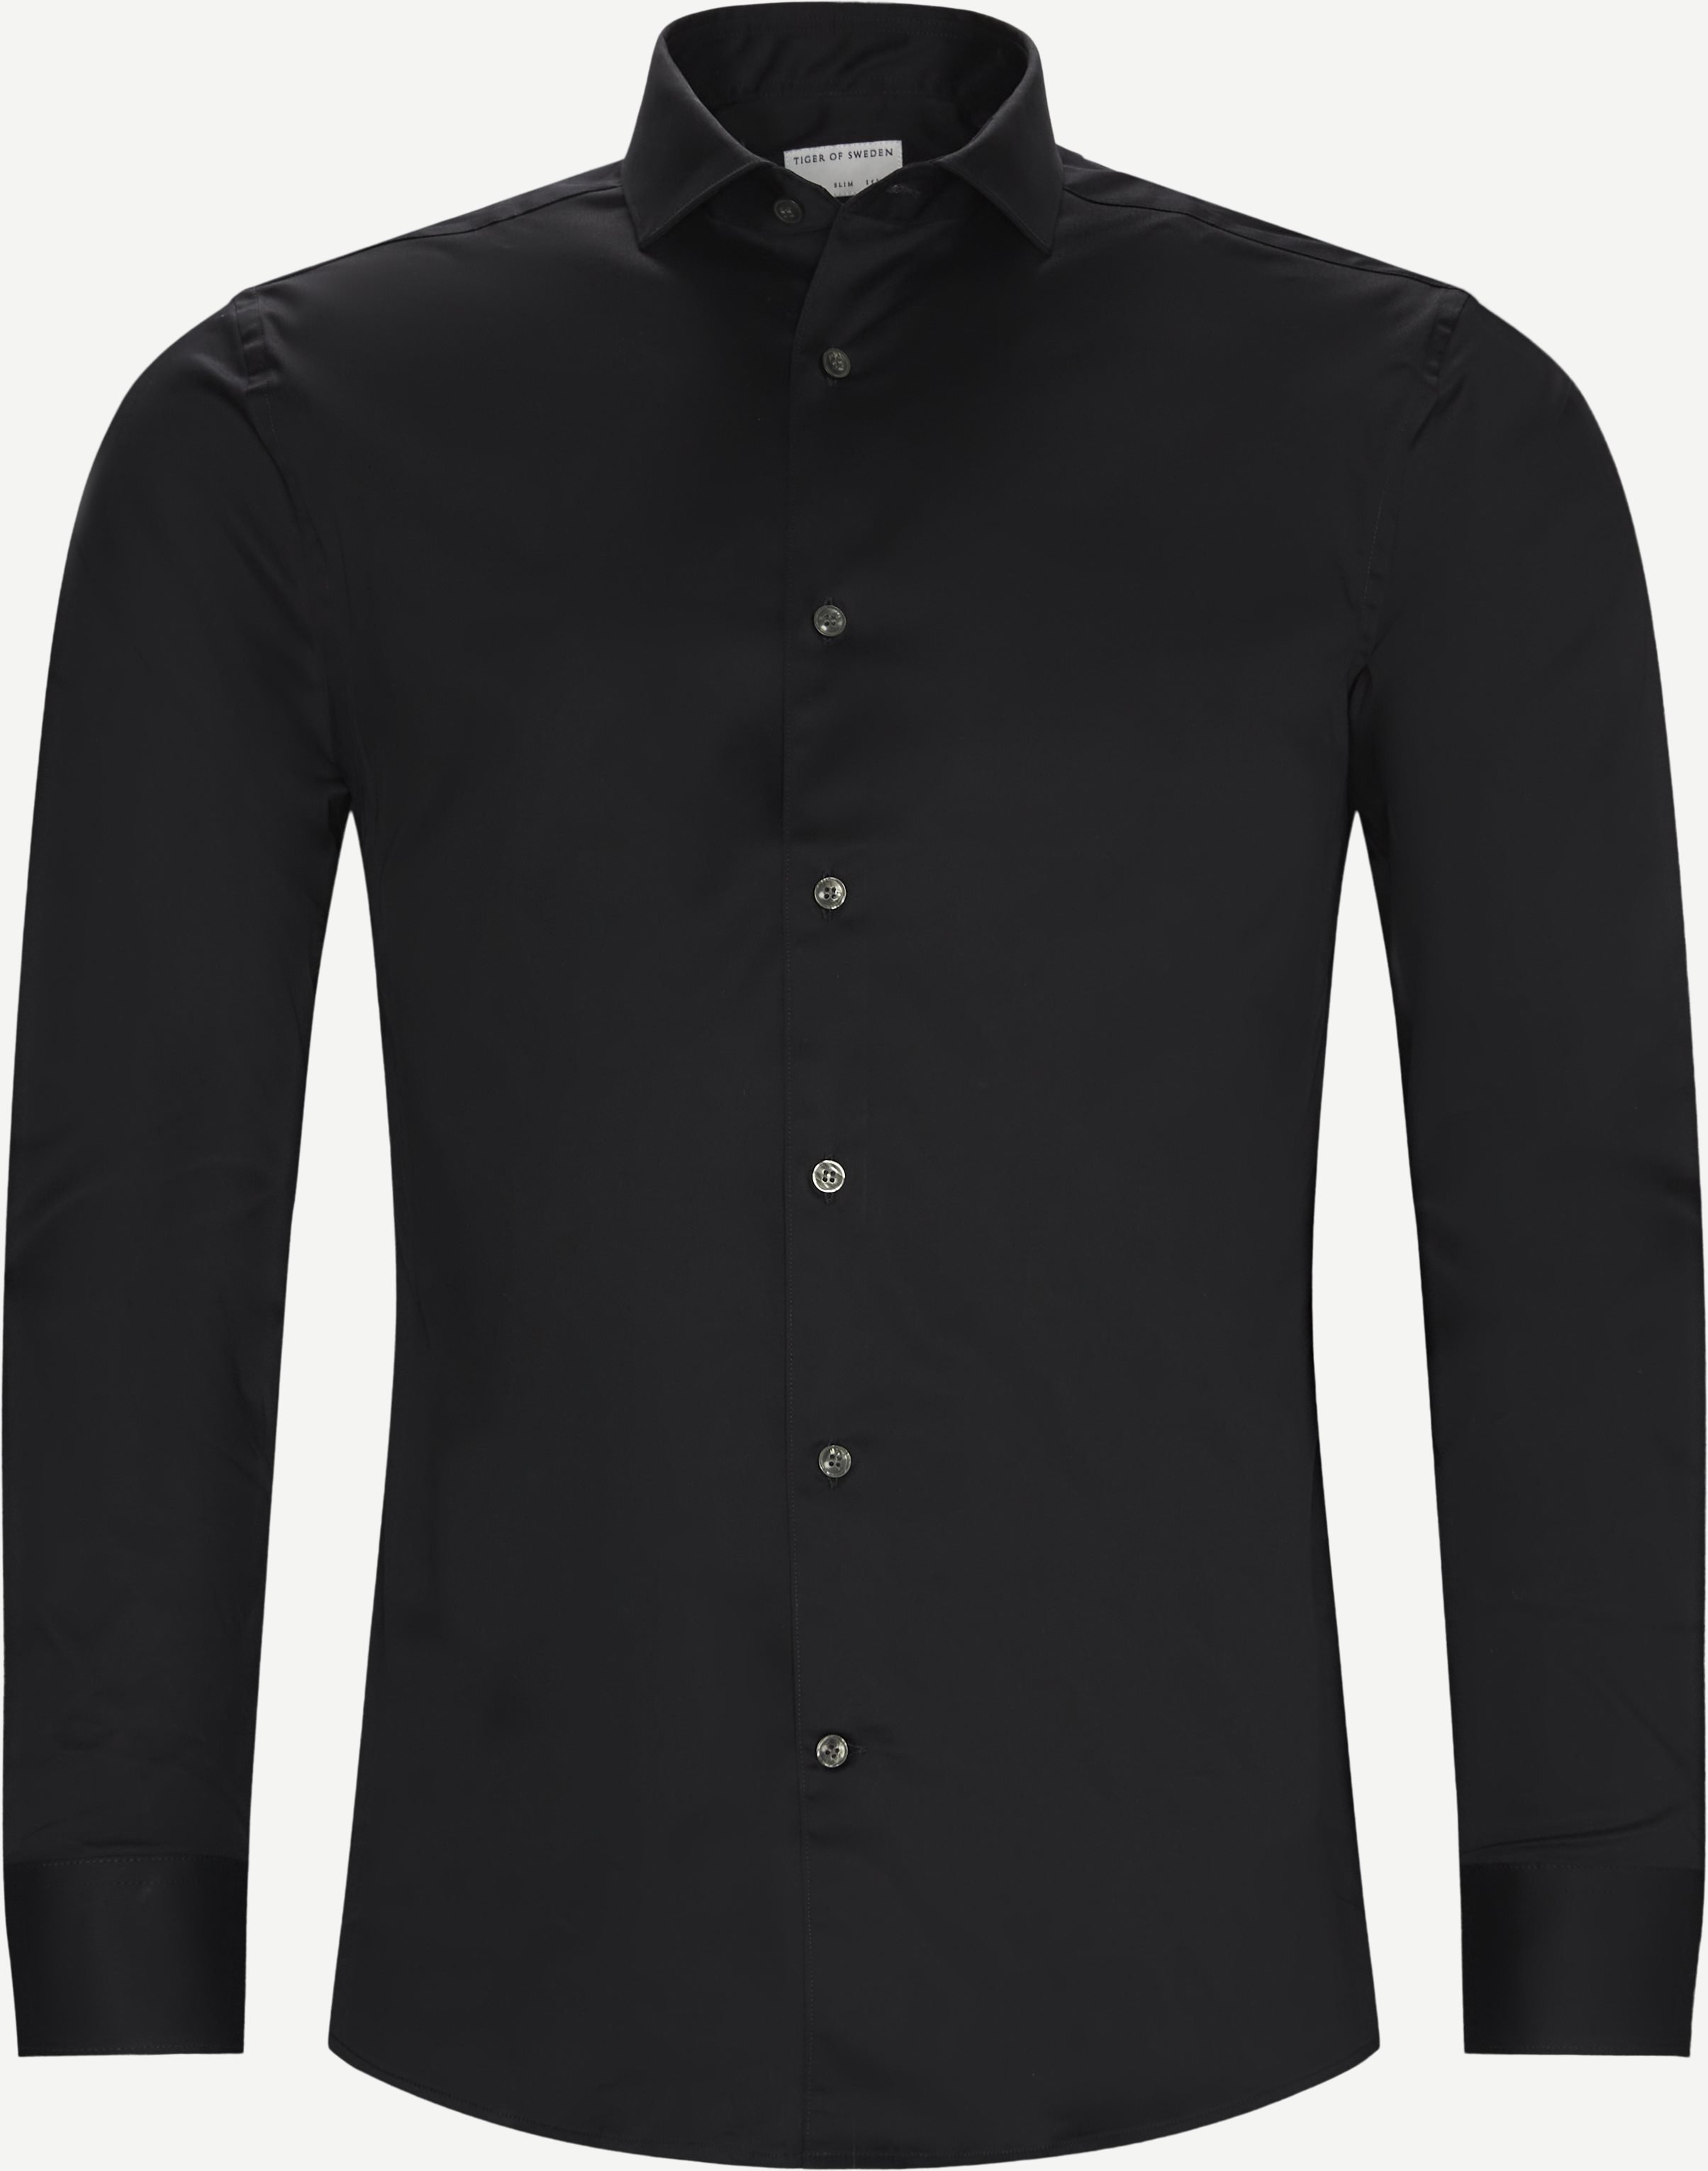 Farrell5 Shirt - Shirts - Slim fit - Black